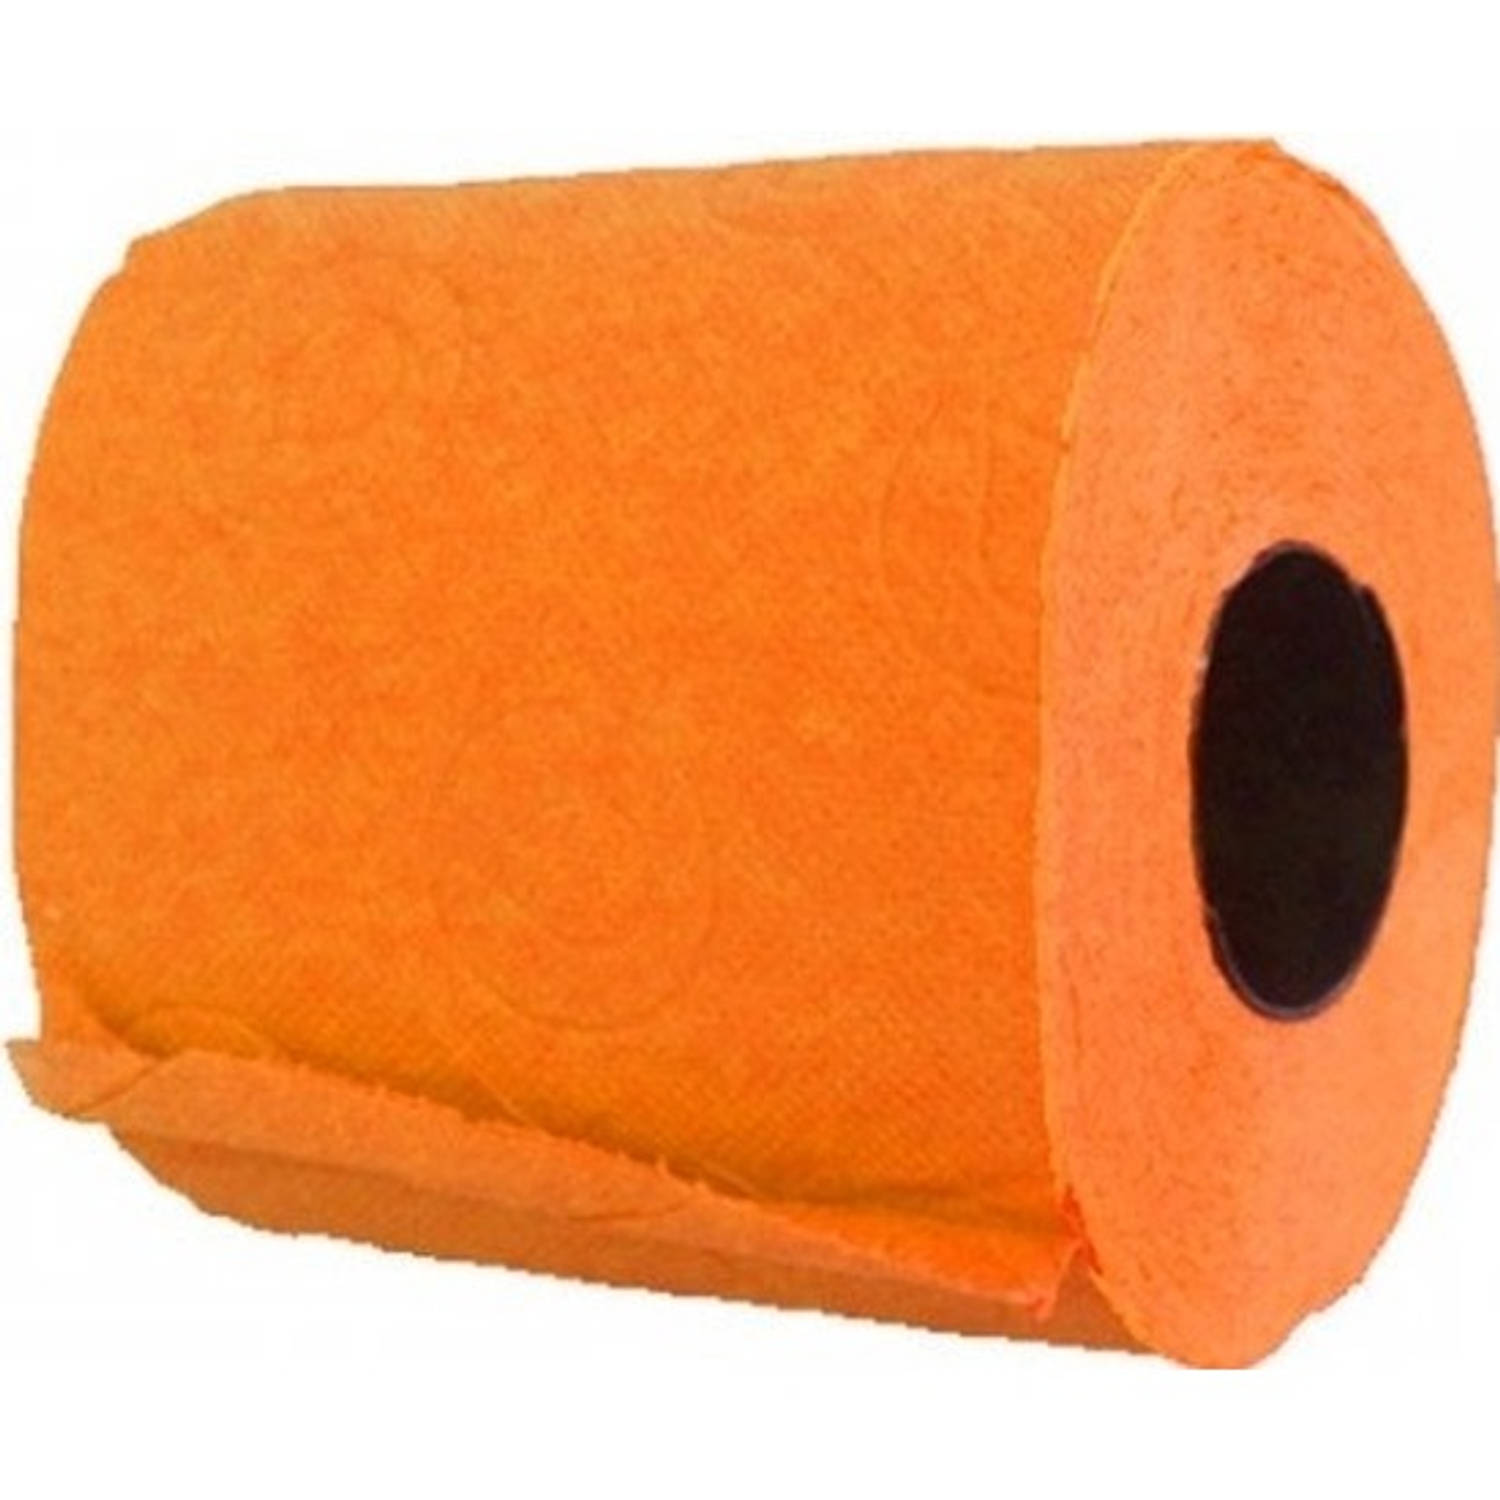 1x Oranje Toiletpapier Rol 140 Vellen Oranje Thema Feestartikelen Decoratie Wc-papier-pleepapier